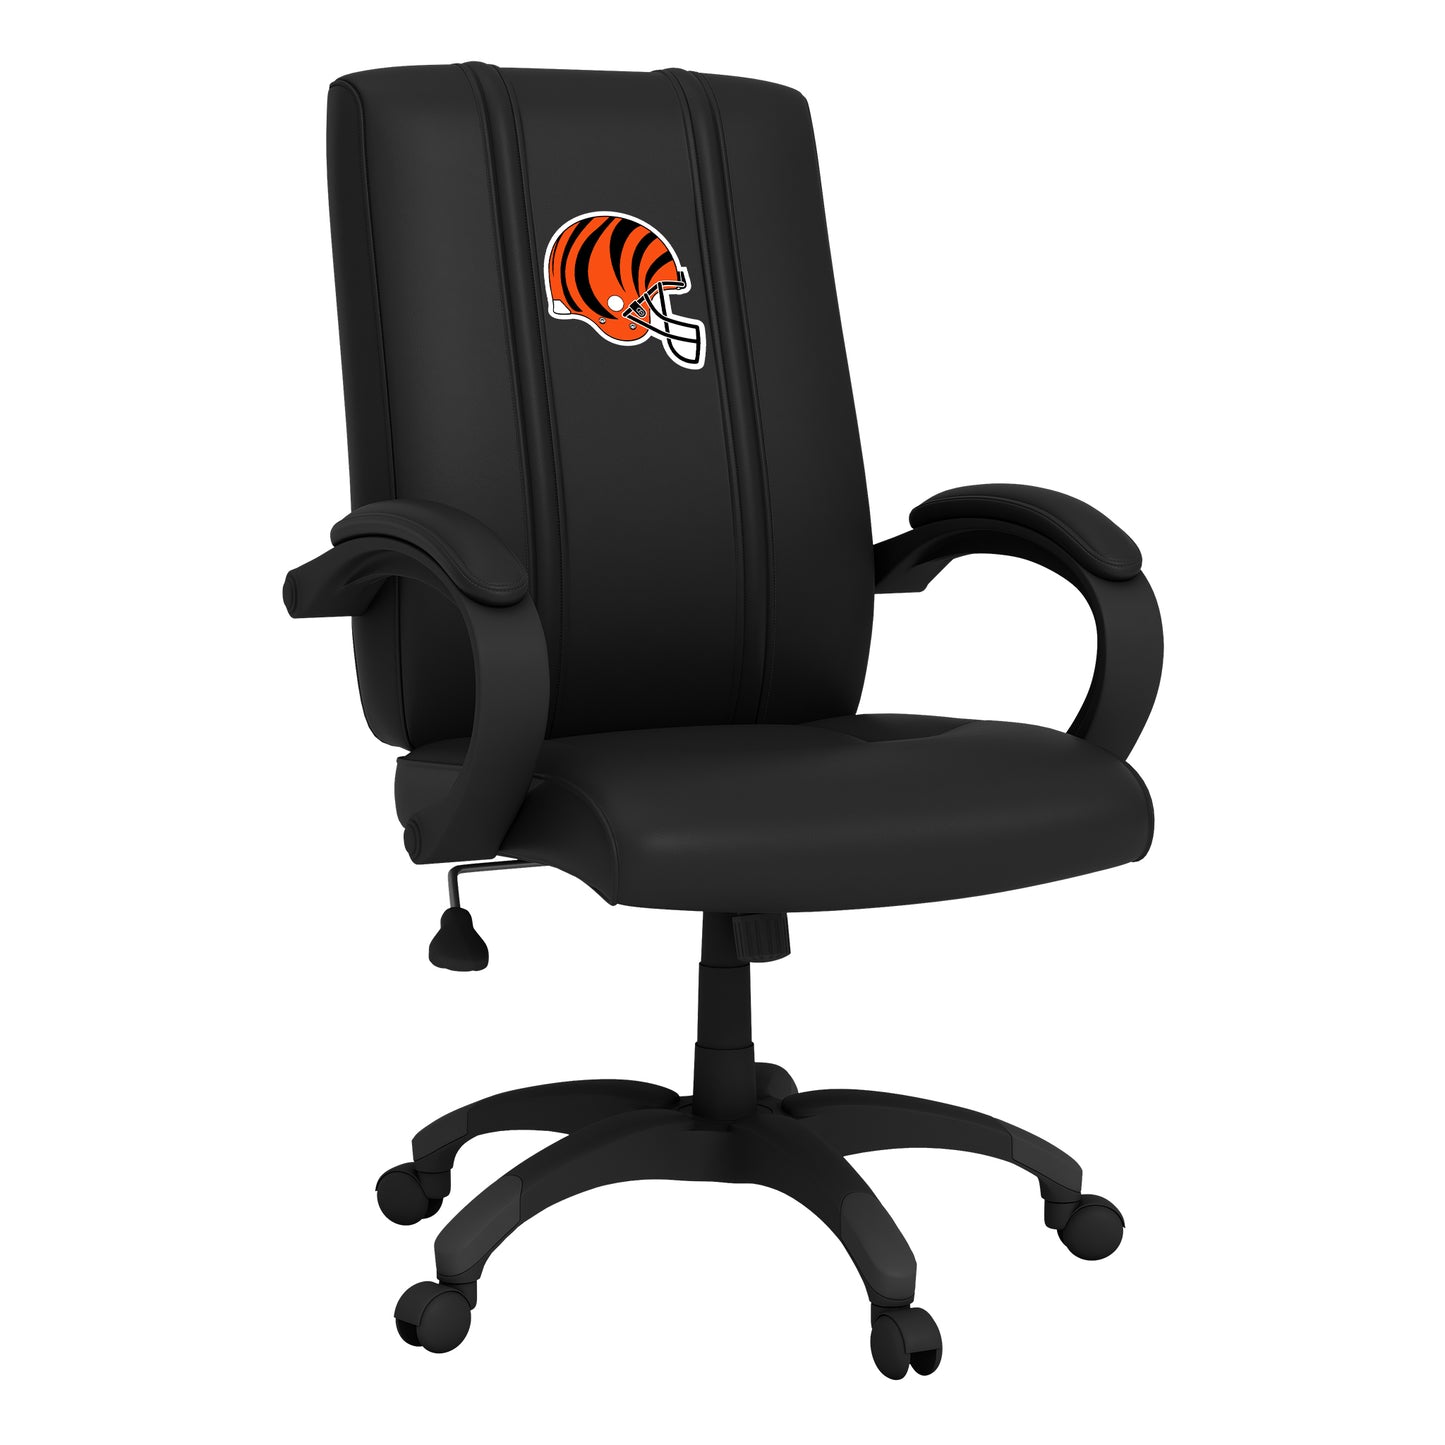 Office Chair 1000 with  Cincinnati Bengals Helmet Logo